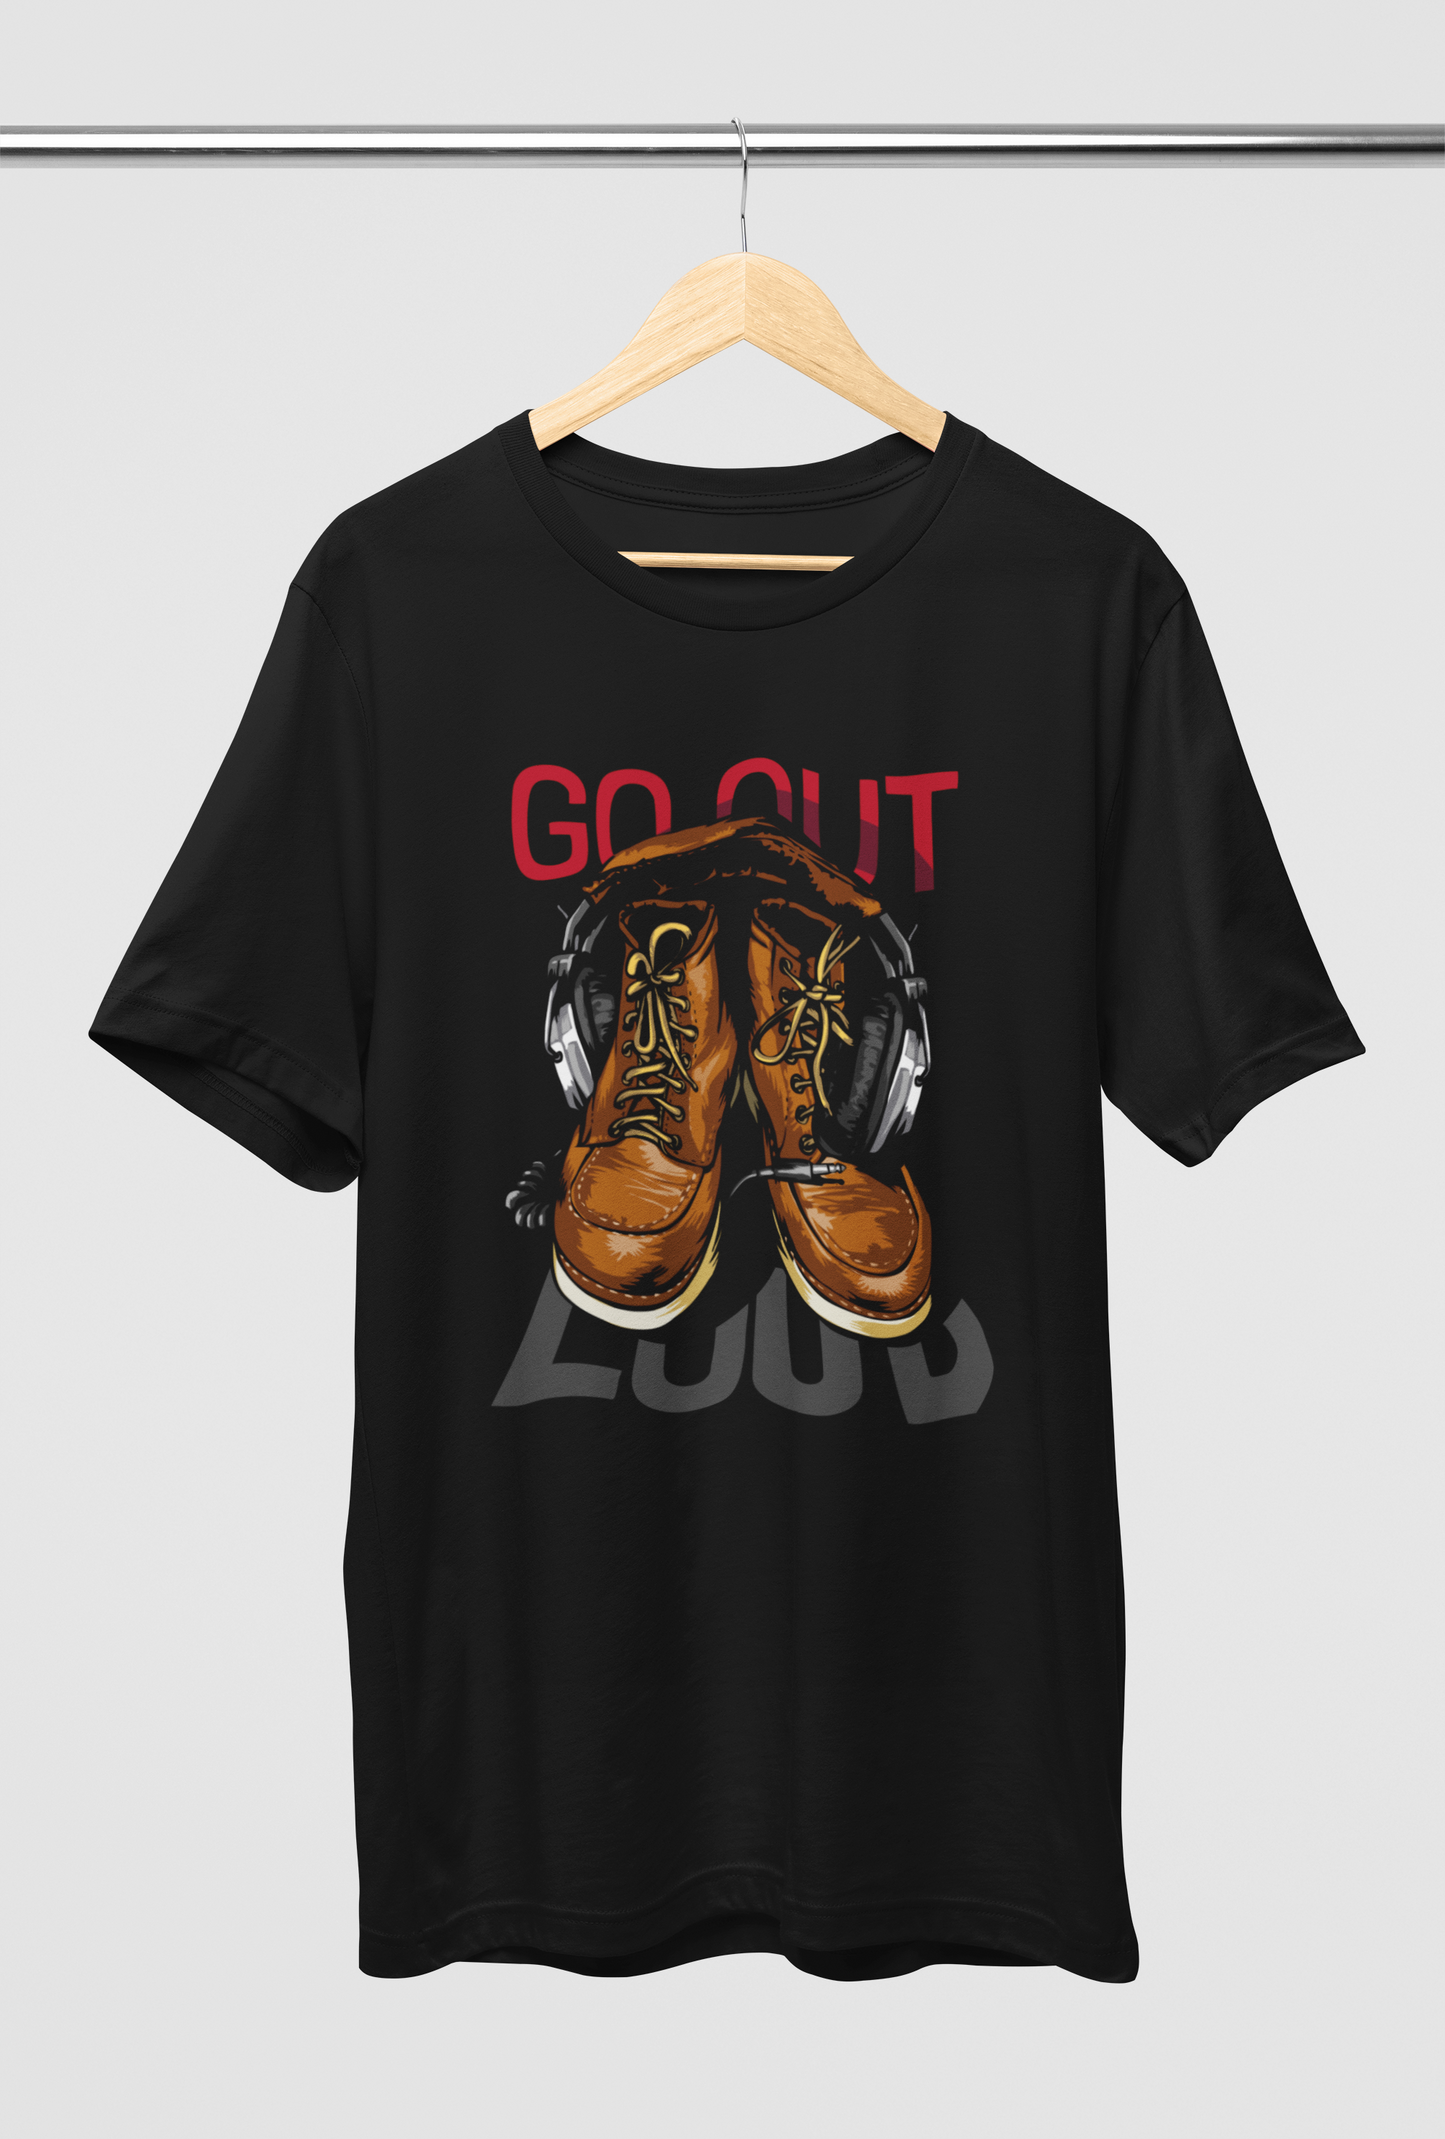 Go Out Loud Unisex Round Neck Black Cotton T-Shirt | DJ Paroma Collection | ATOM